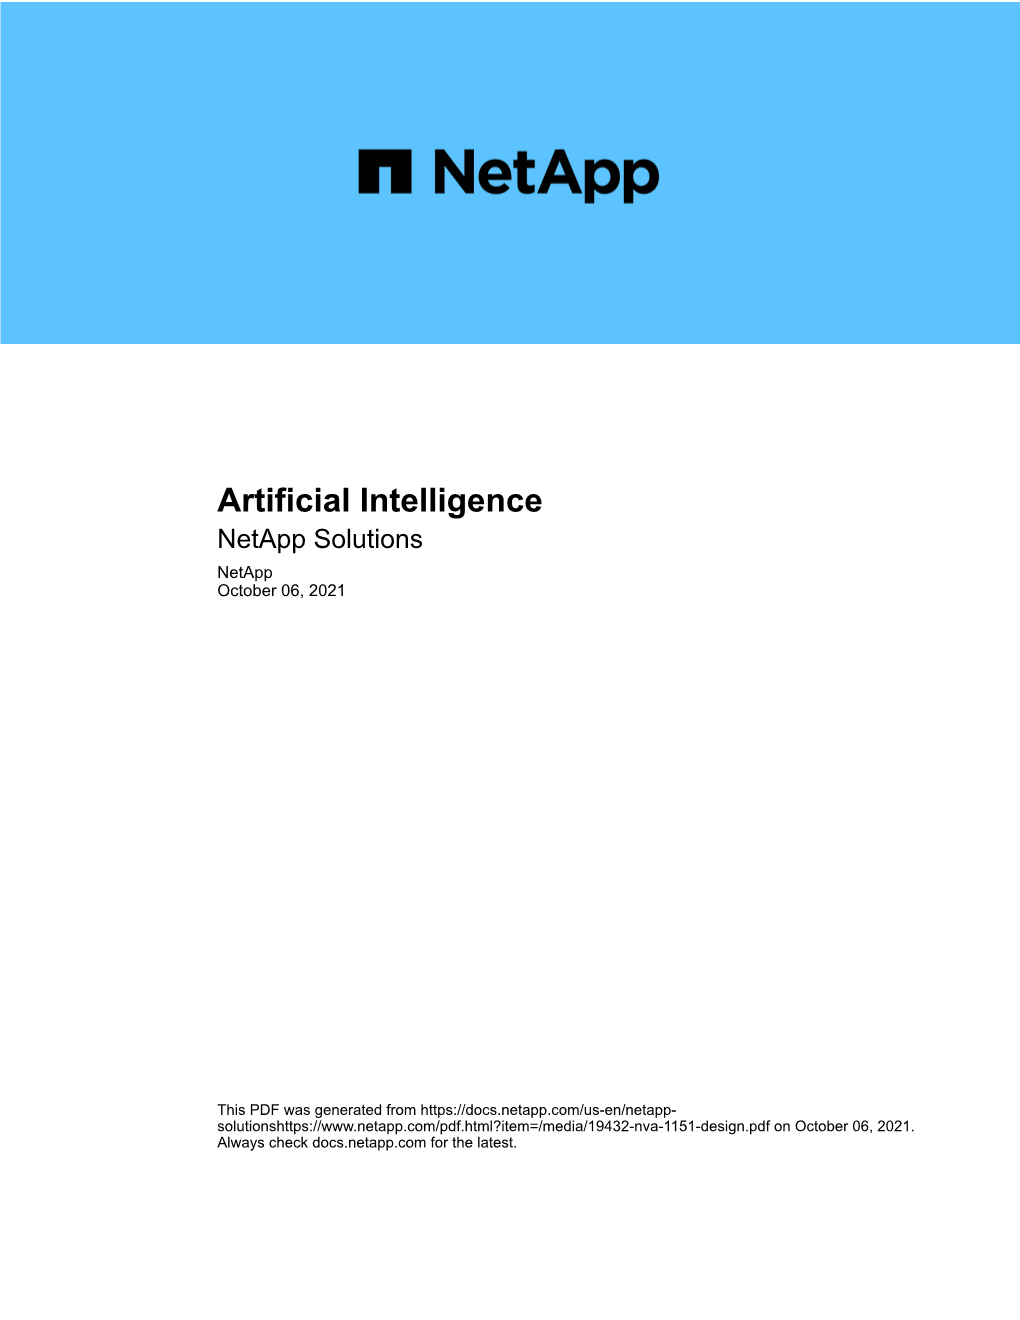 Artificial Intelligence : Netapp Solutions